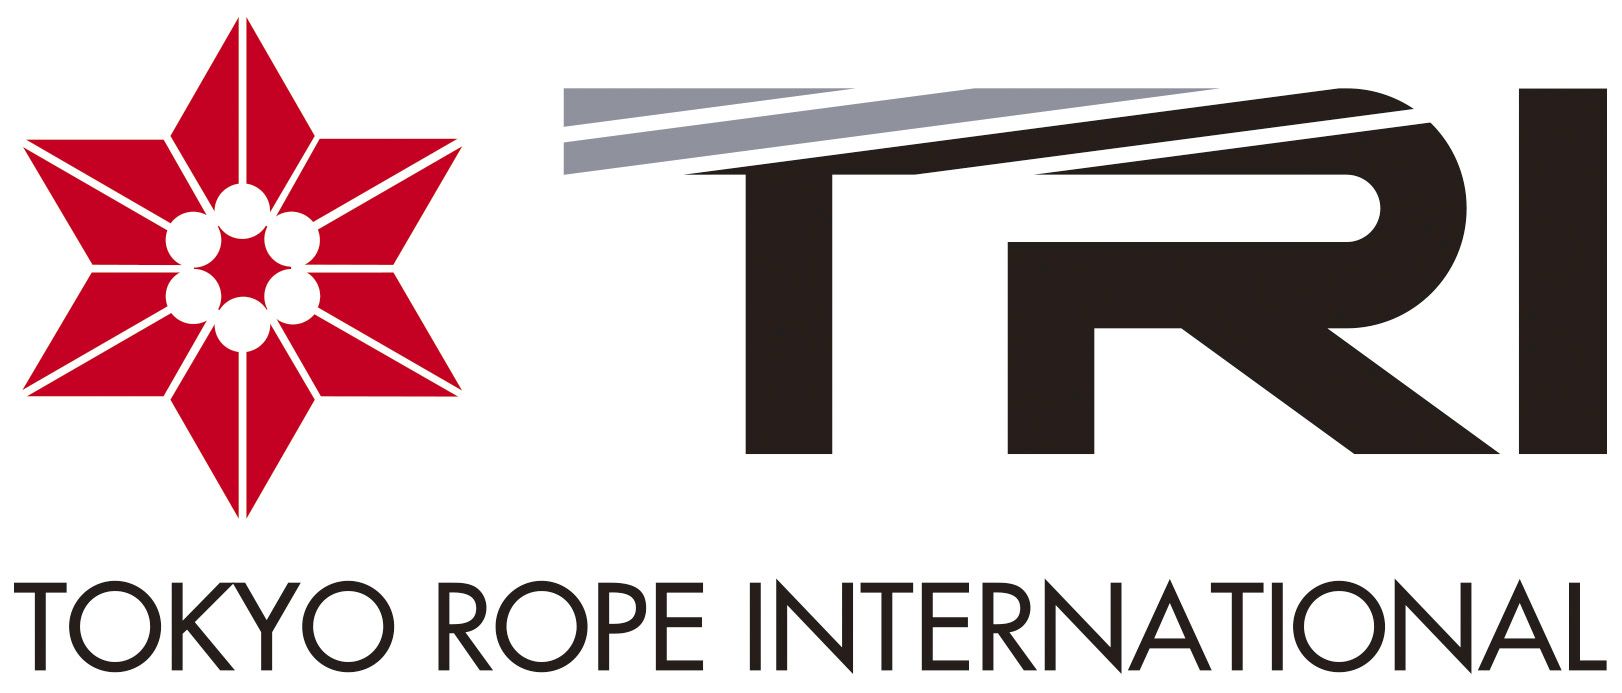 Tokyo Rope International logo